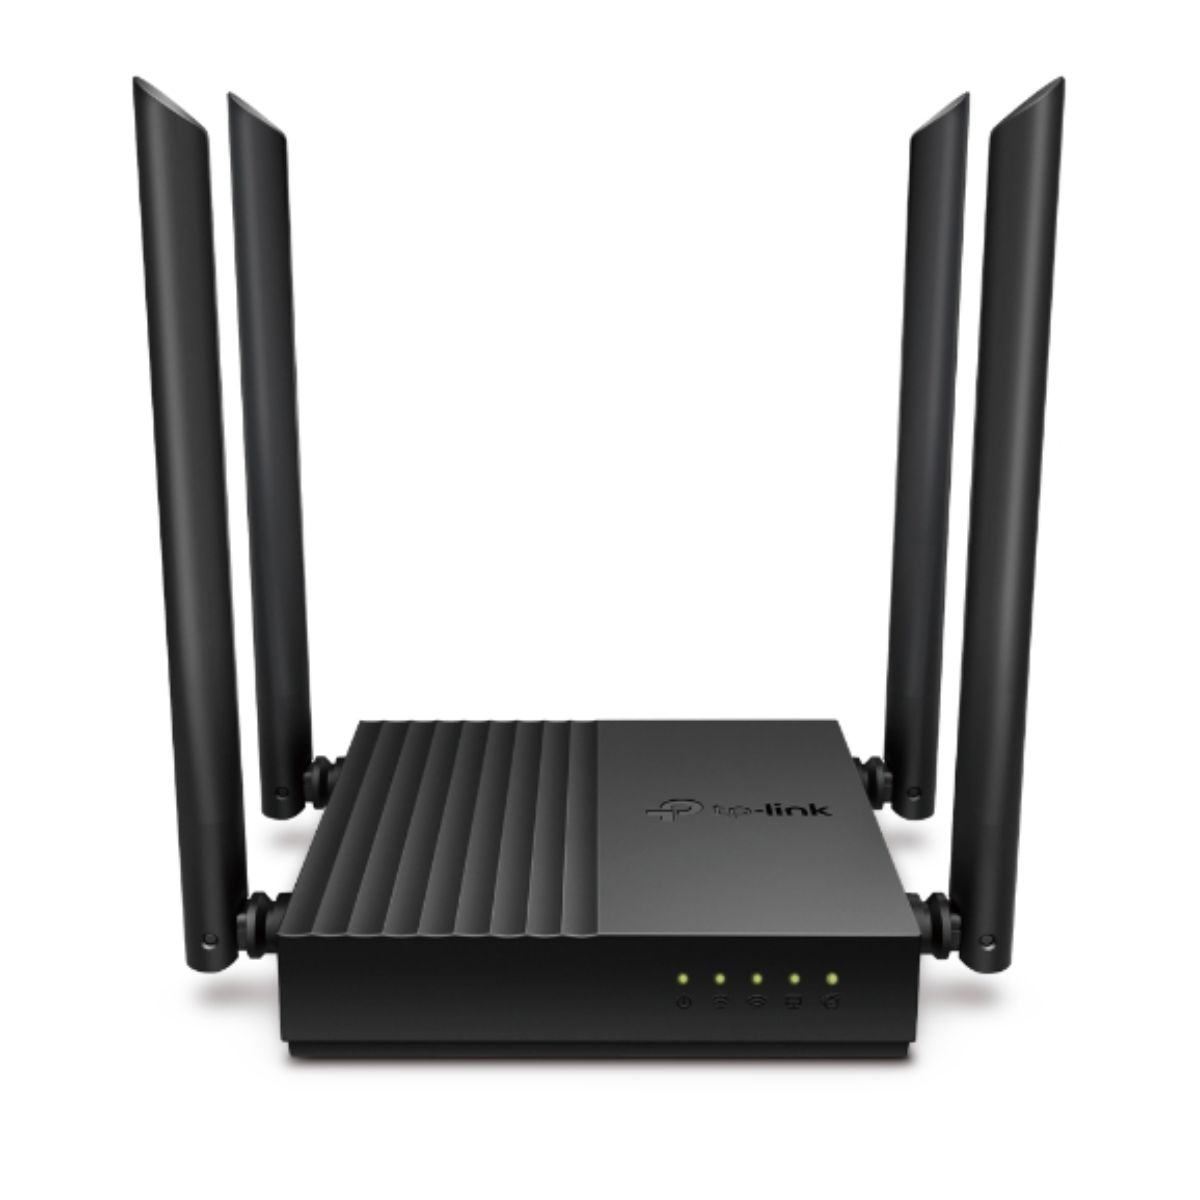 Bộ phát wifi Gigabit TP-Link Archer C64 Công nghệ Beamforming, tốc độ 867 Mbps 5 GHz và 400 Mbps 2.4 GHz